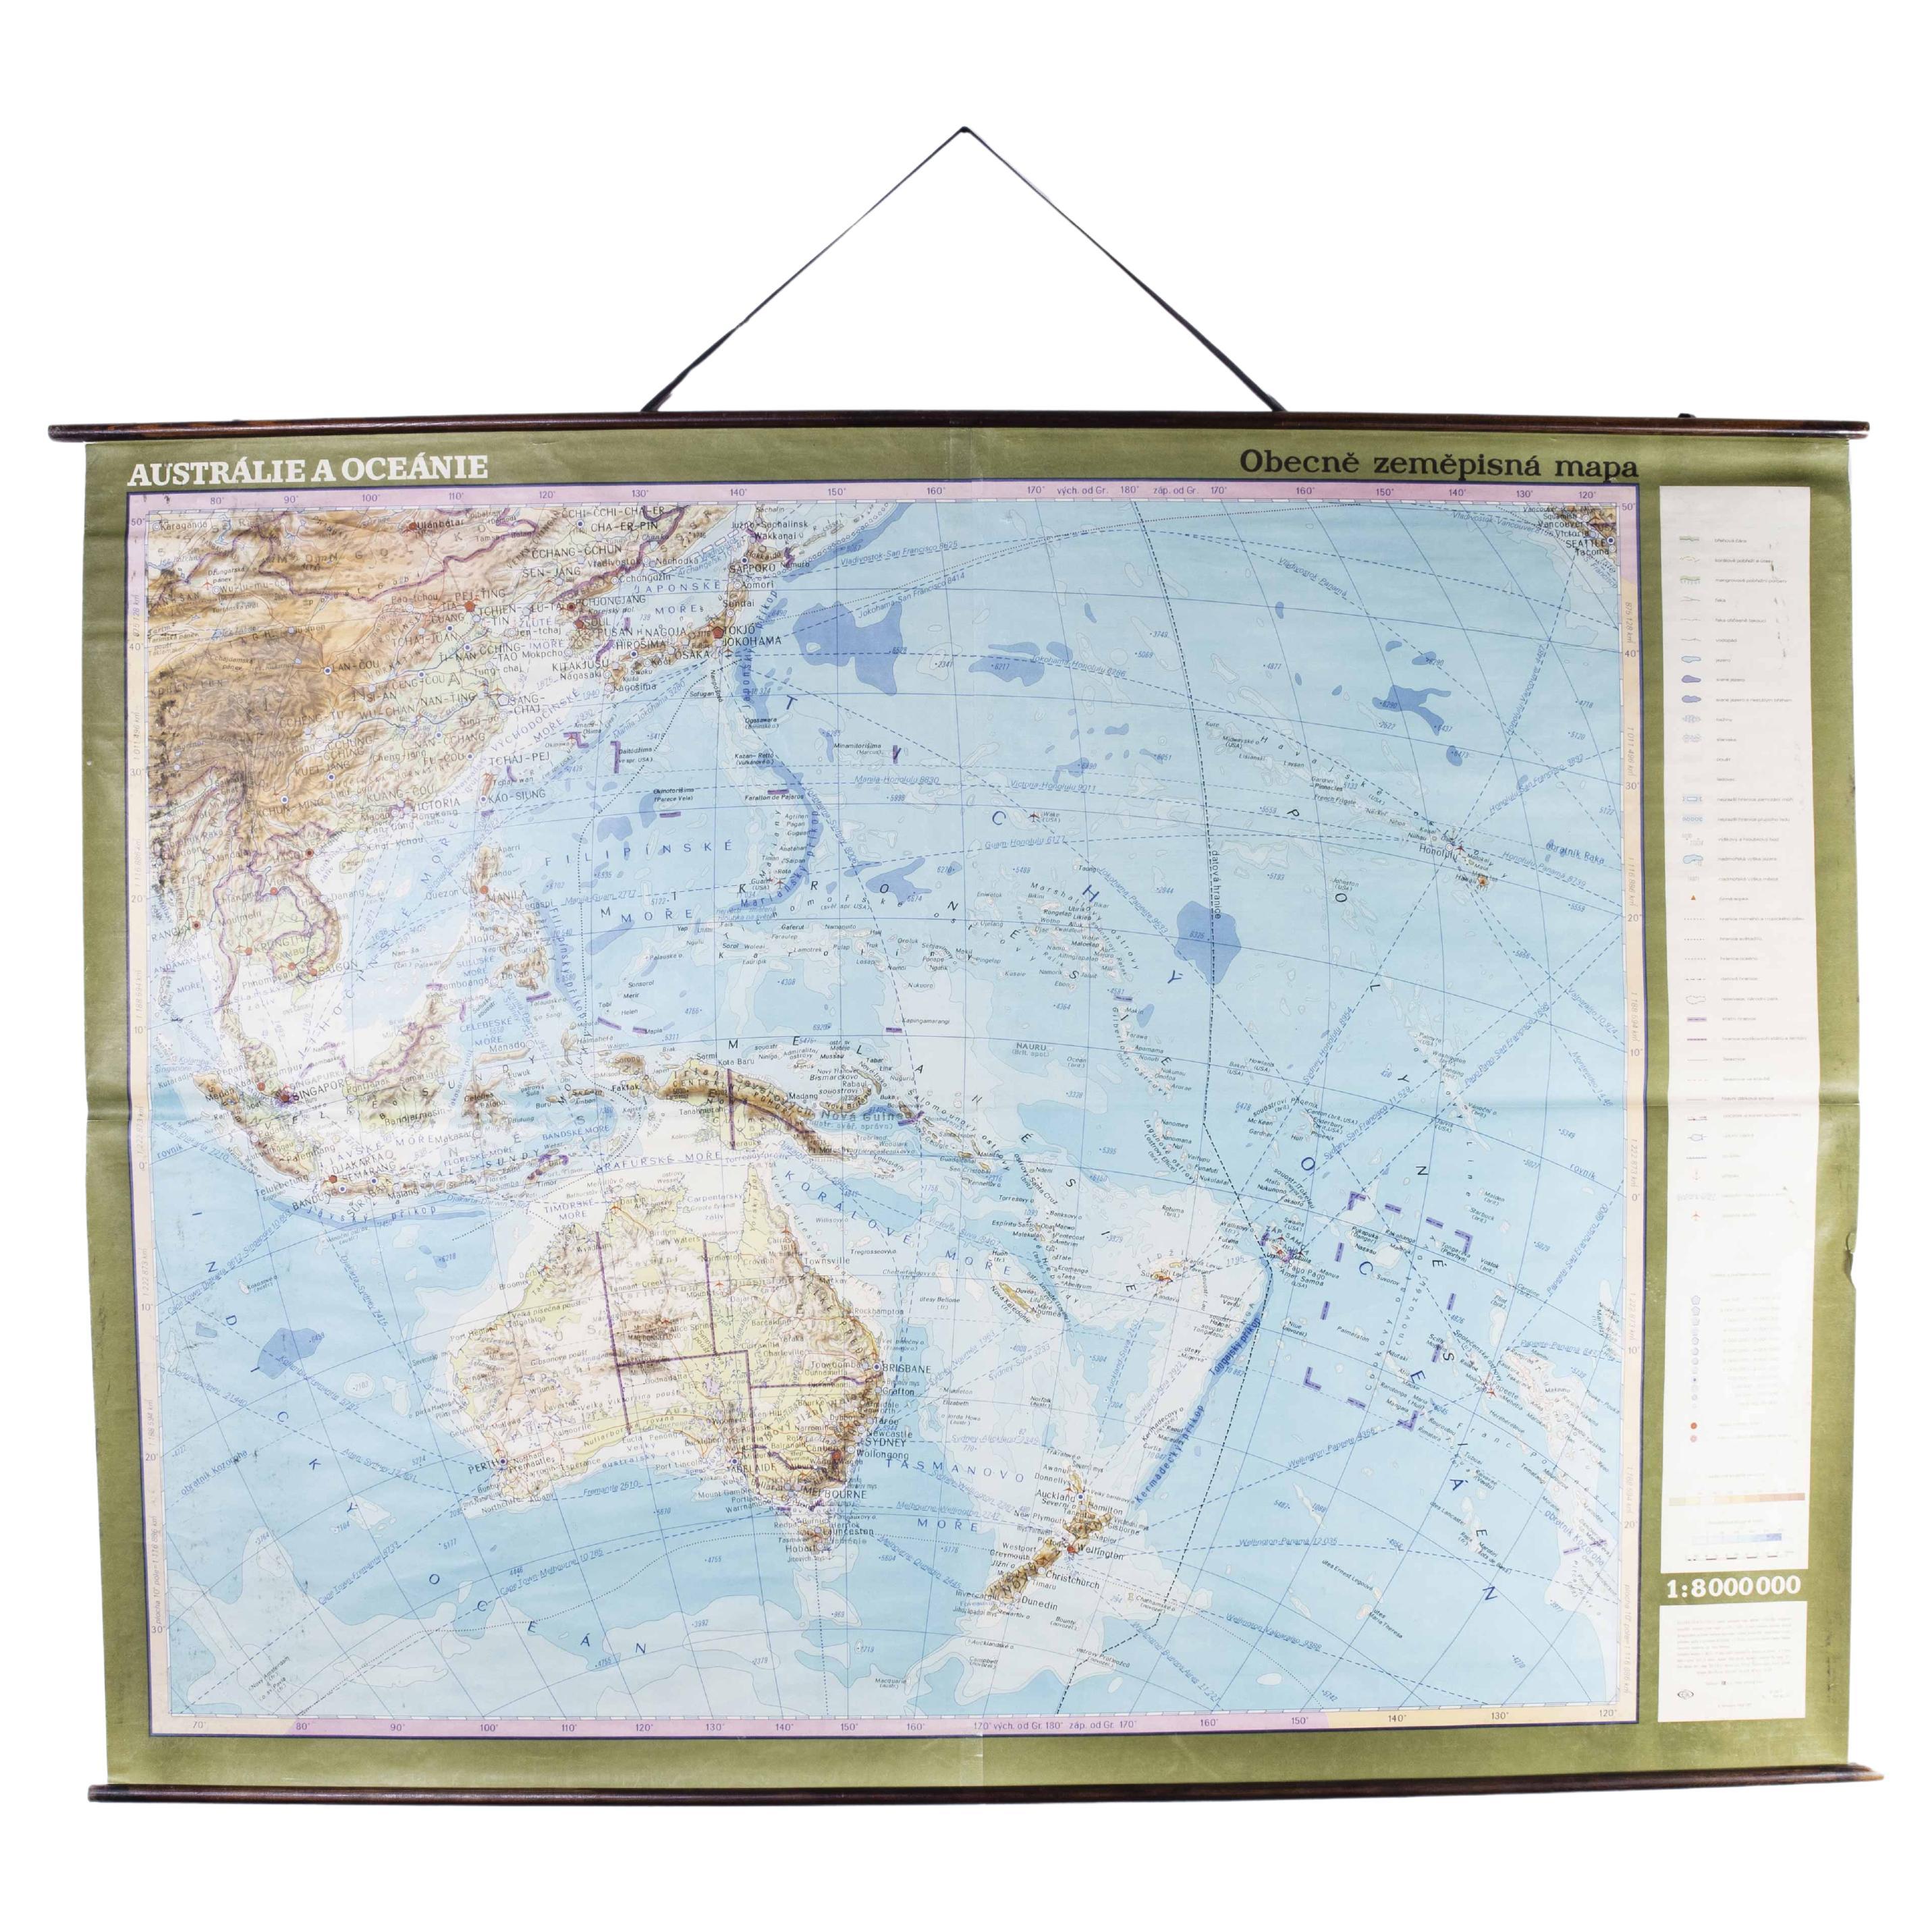 Geographicale Bildungskarte des späten 20. Jahrhunderts – Australasia